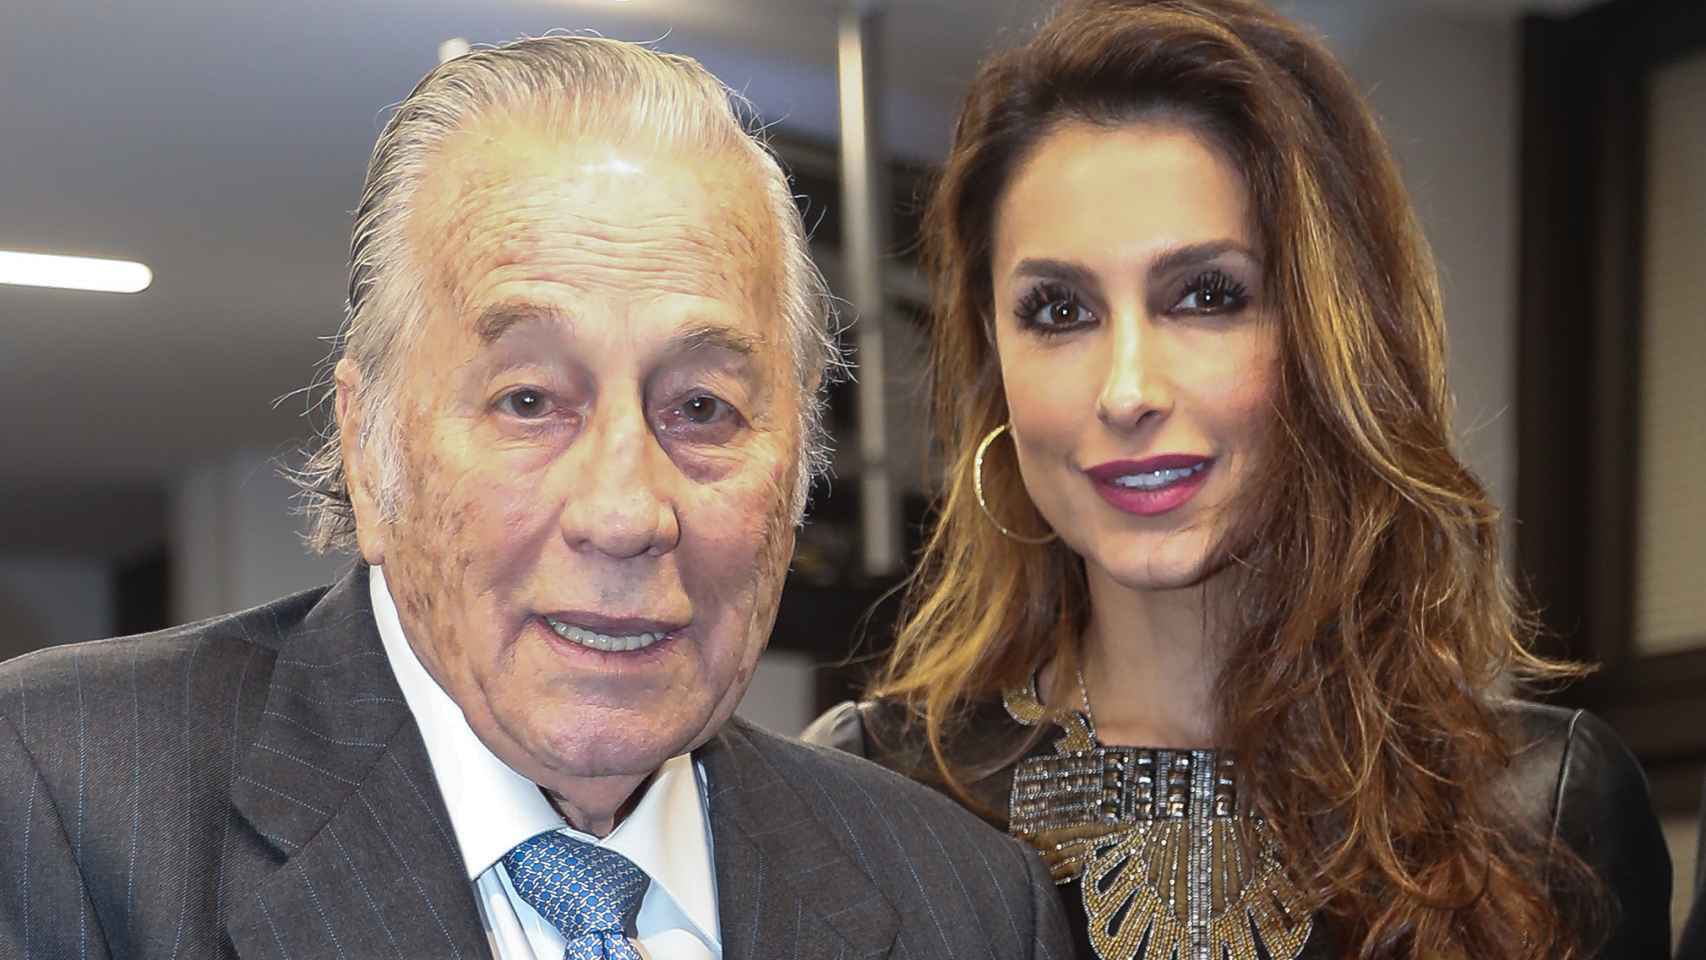 Paloma Cuevas junto a su padre, Victoriano Valencia, en una imagen tomada en diciembre de 2019 durante un acto público.